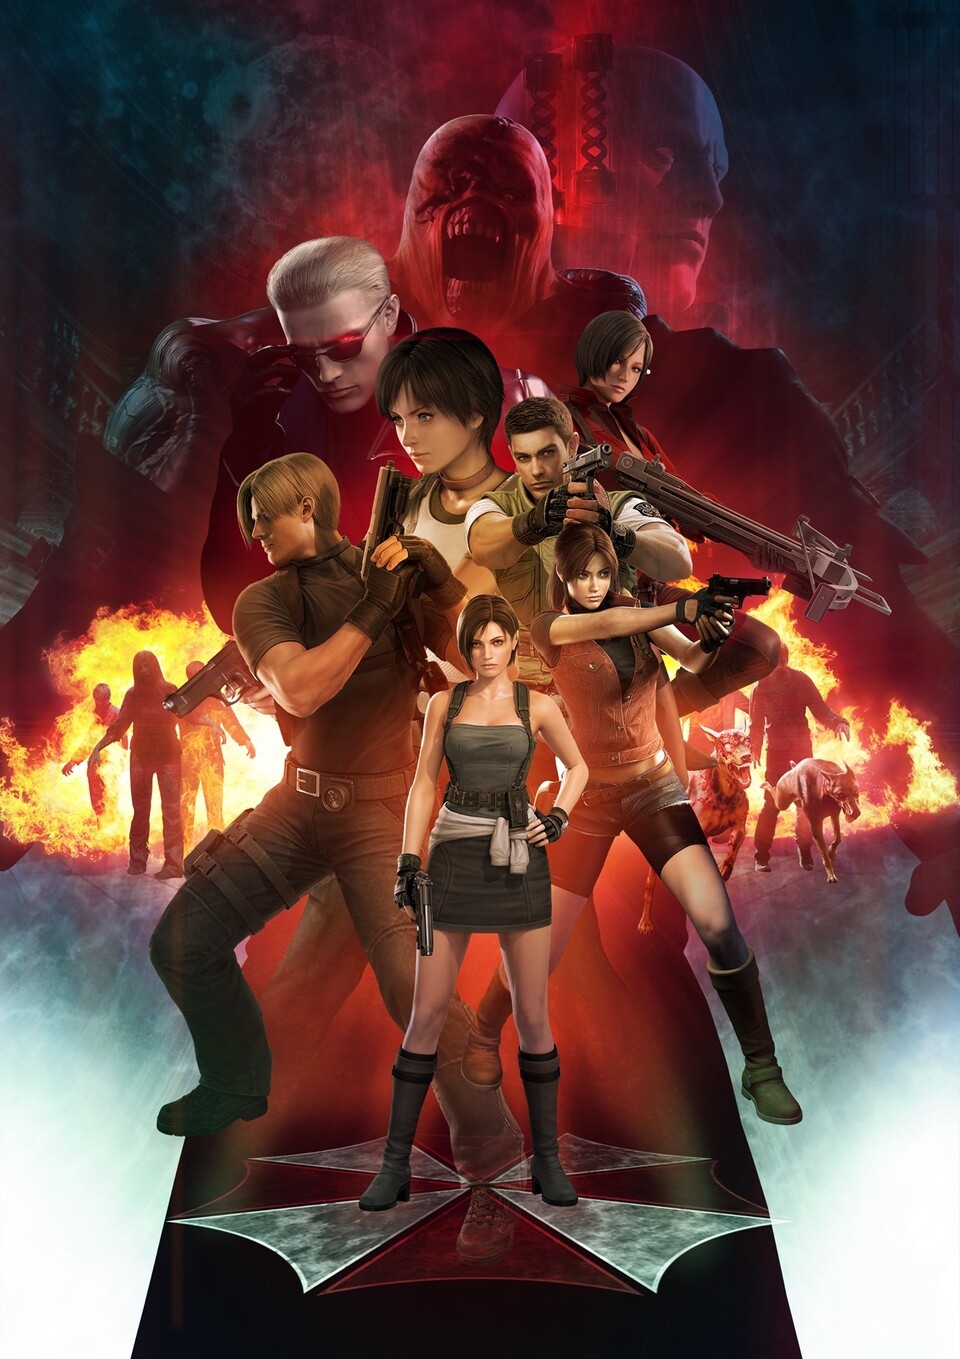 Dieses Resident Evil-Bild ist auf der Facebook-Seite zu sehen und stellt die Resident Evil 3-Figuren in den Fokus.